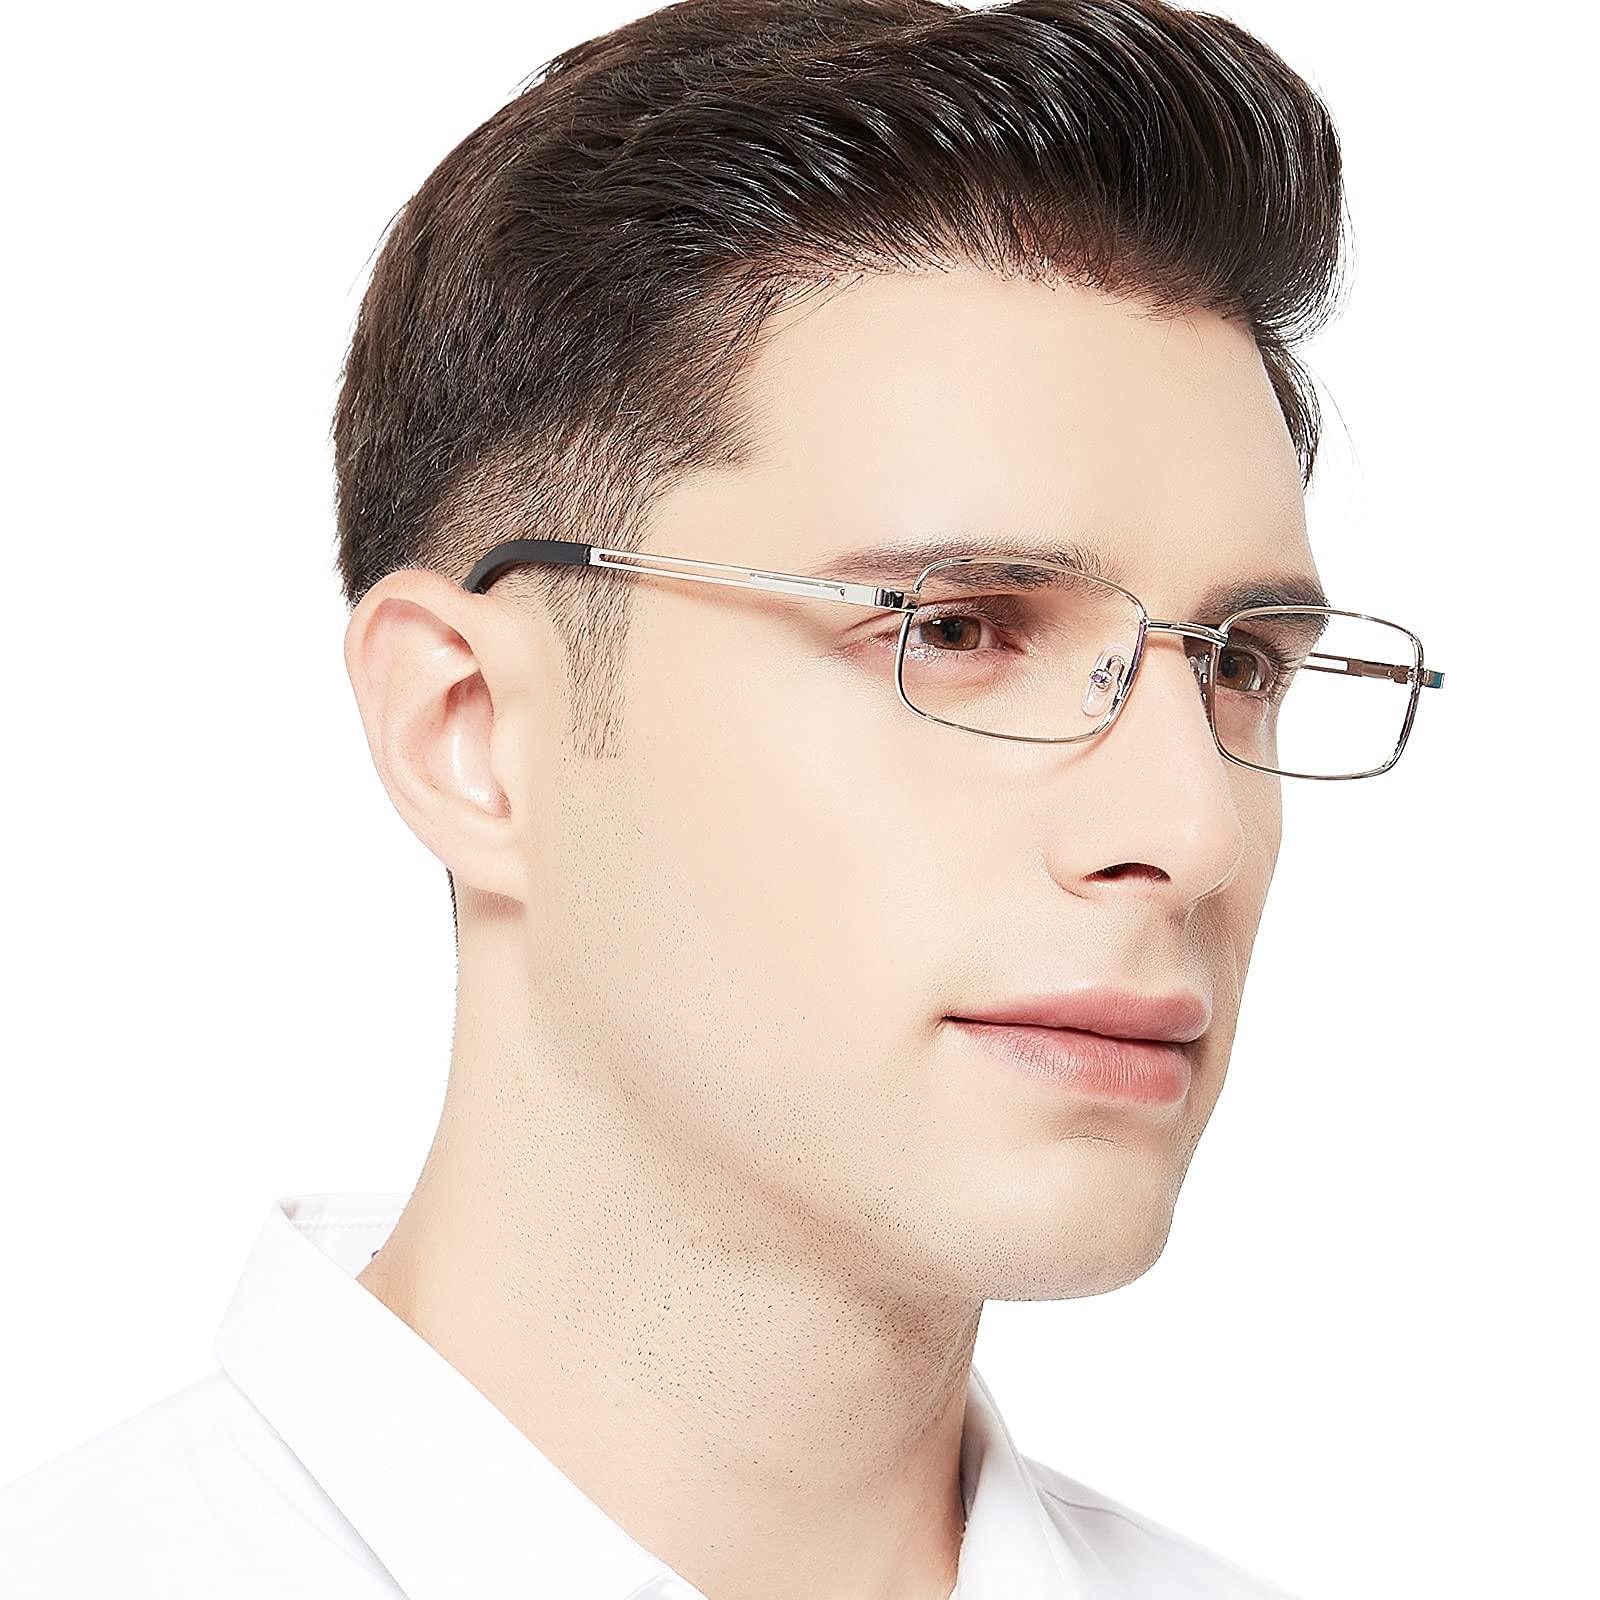 OCCI CHIARI Metal Reading Glasses Blue Light Readers for Men(1.0 1.25 1.5 1.75 2.0 2.25 2.5 2.75 3.0 3.5 4.0) - Occichiari 